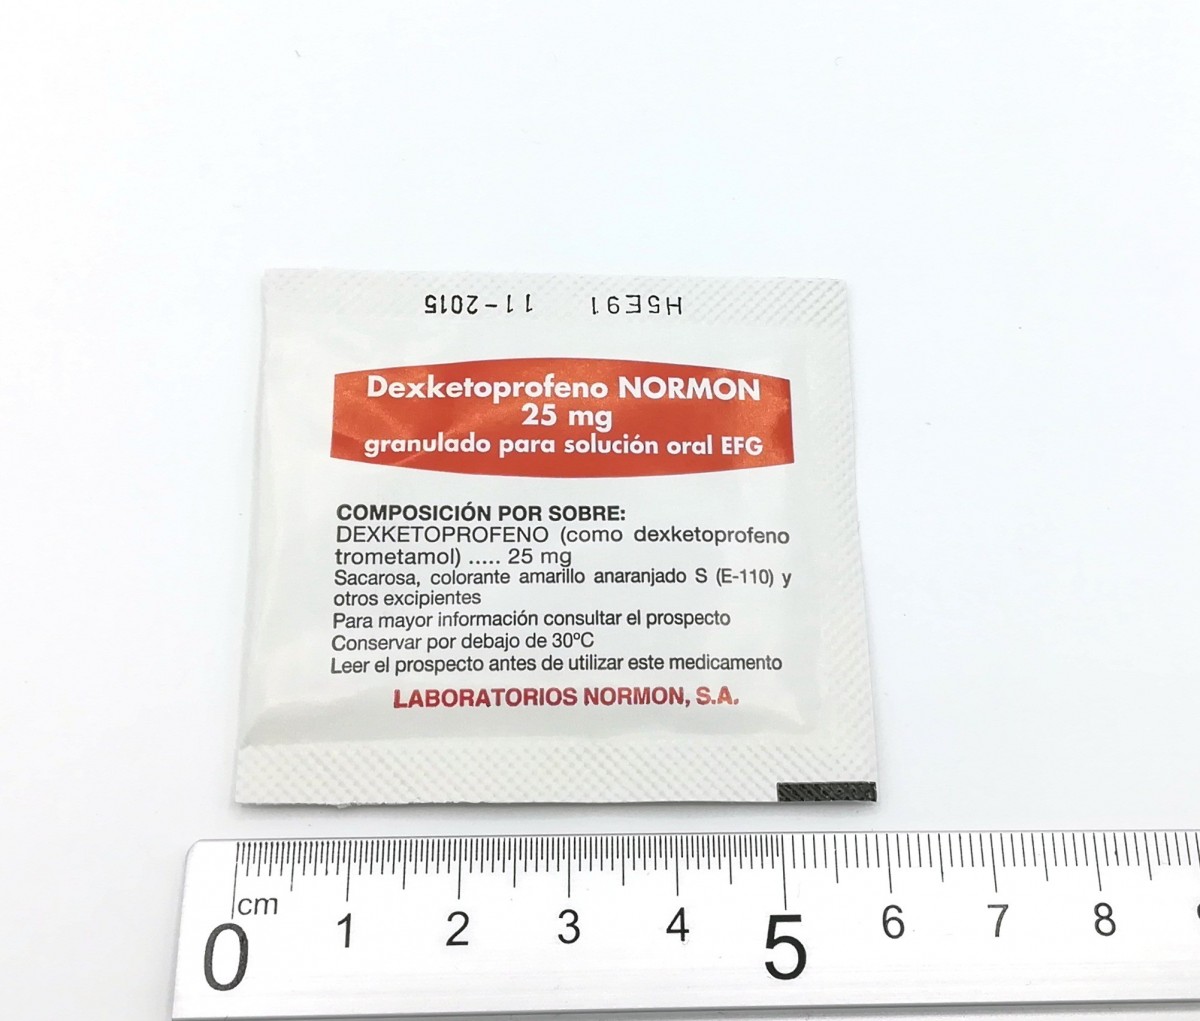 DEXKETOPROFENO NORMON 25 MG GRANULADO PARA SOLUCION ORAL EFG , 20 sobres fotografía de la forma farmacéutica.